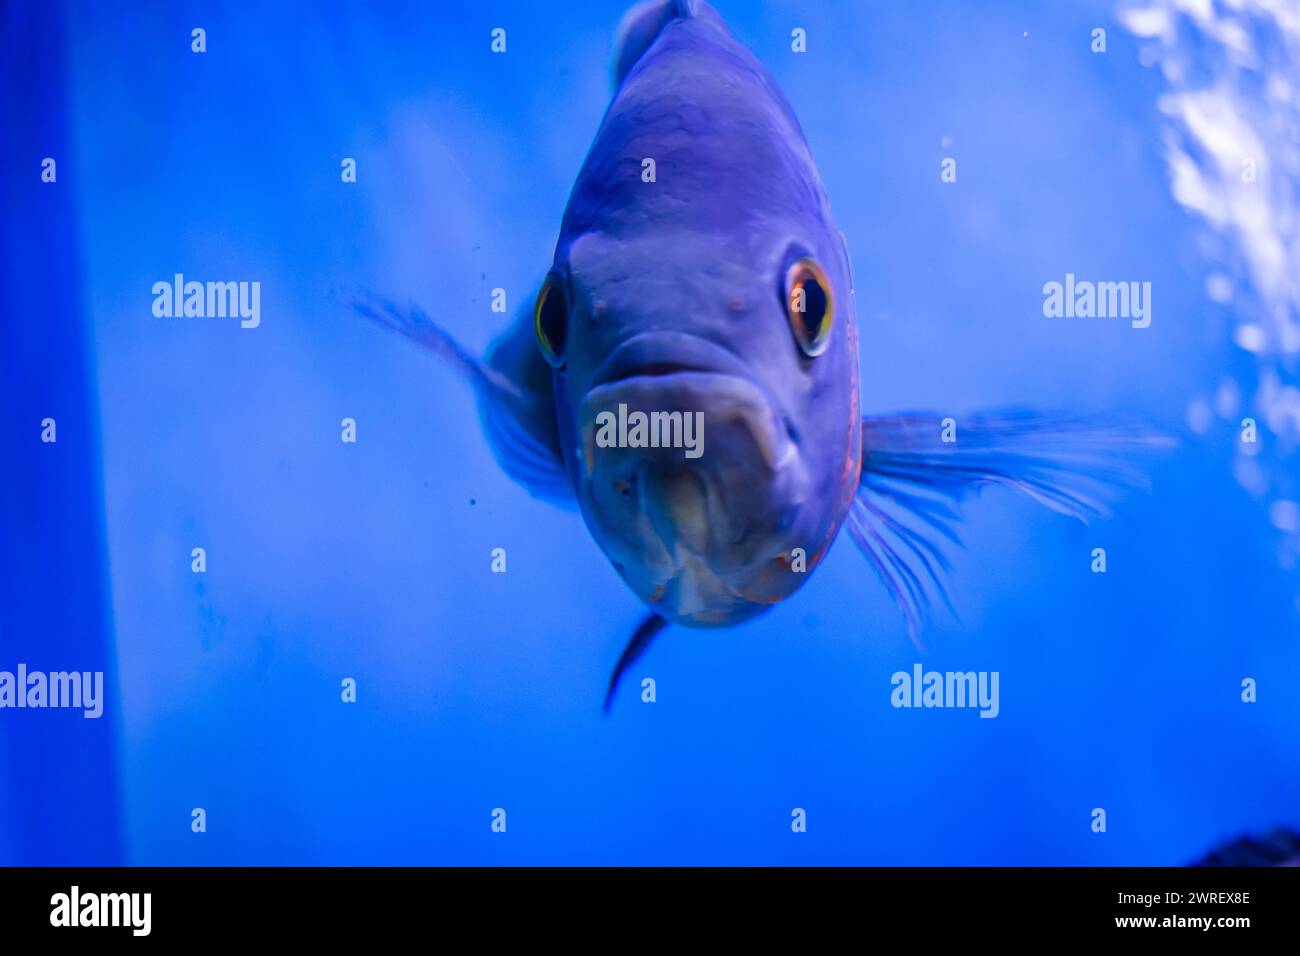 Oscar poisson nageant dans le grand aquarium. Aquarium Island Café, Bhimtal uttrakhand. Astronotus ocellatus. bulles d'yeux. Le « chien d’eau » sud-américain. Banque D'Images